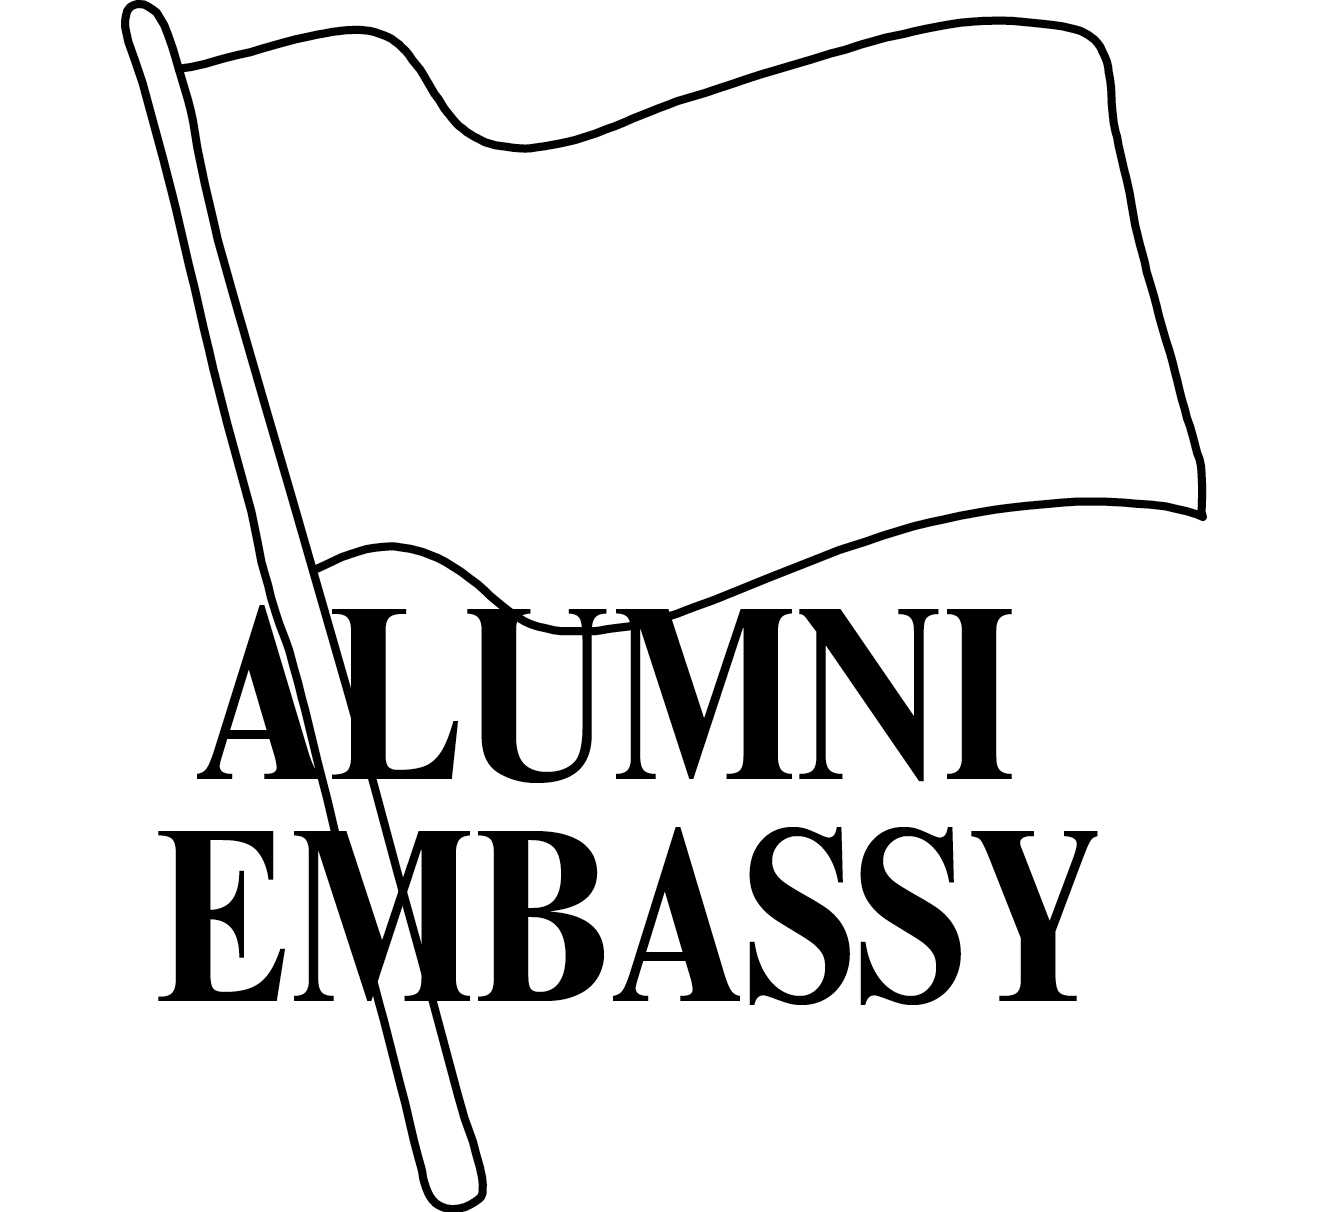 Alumni Embassy (logo)